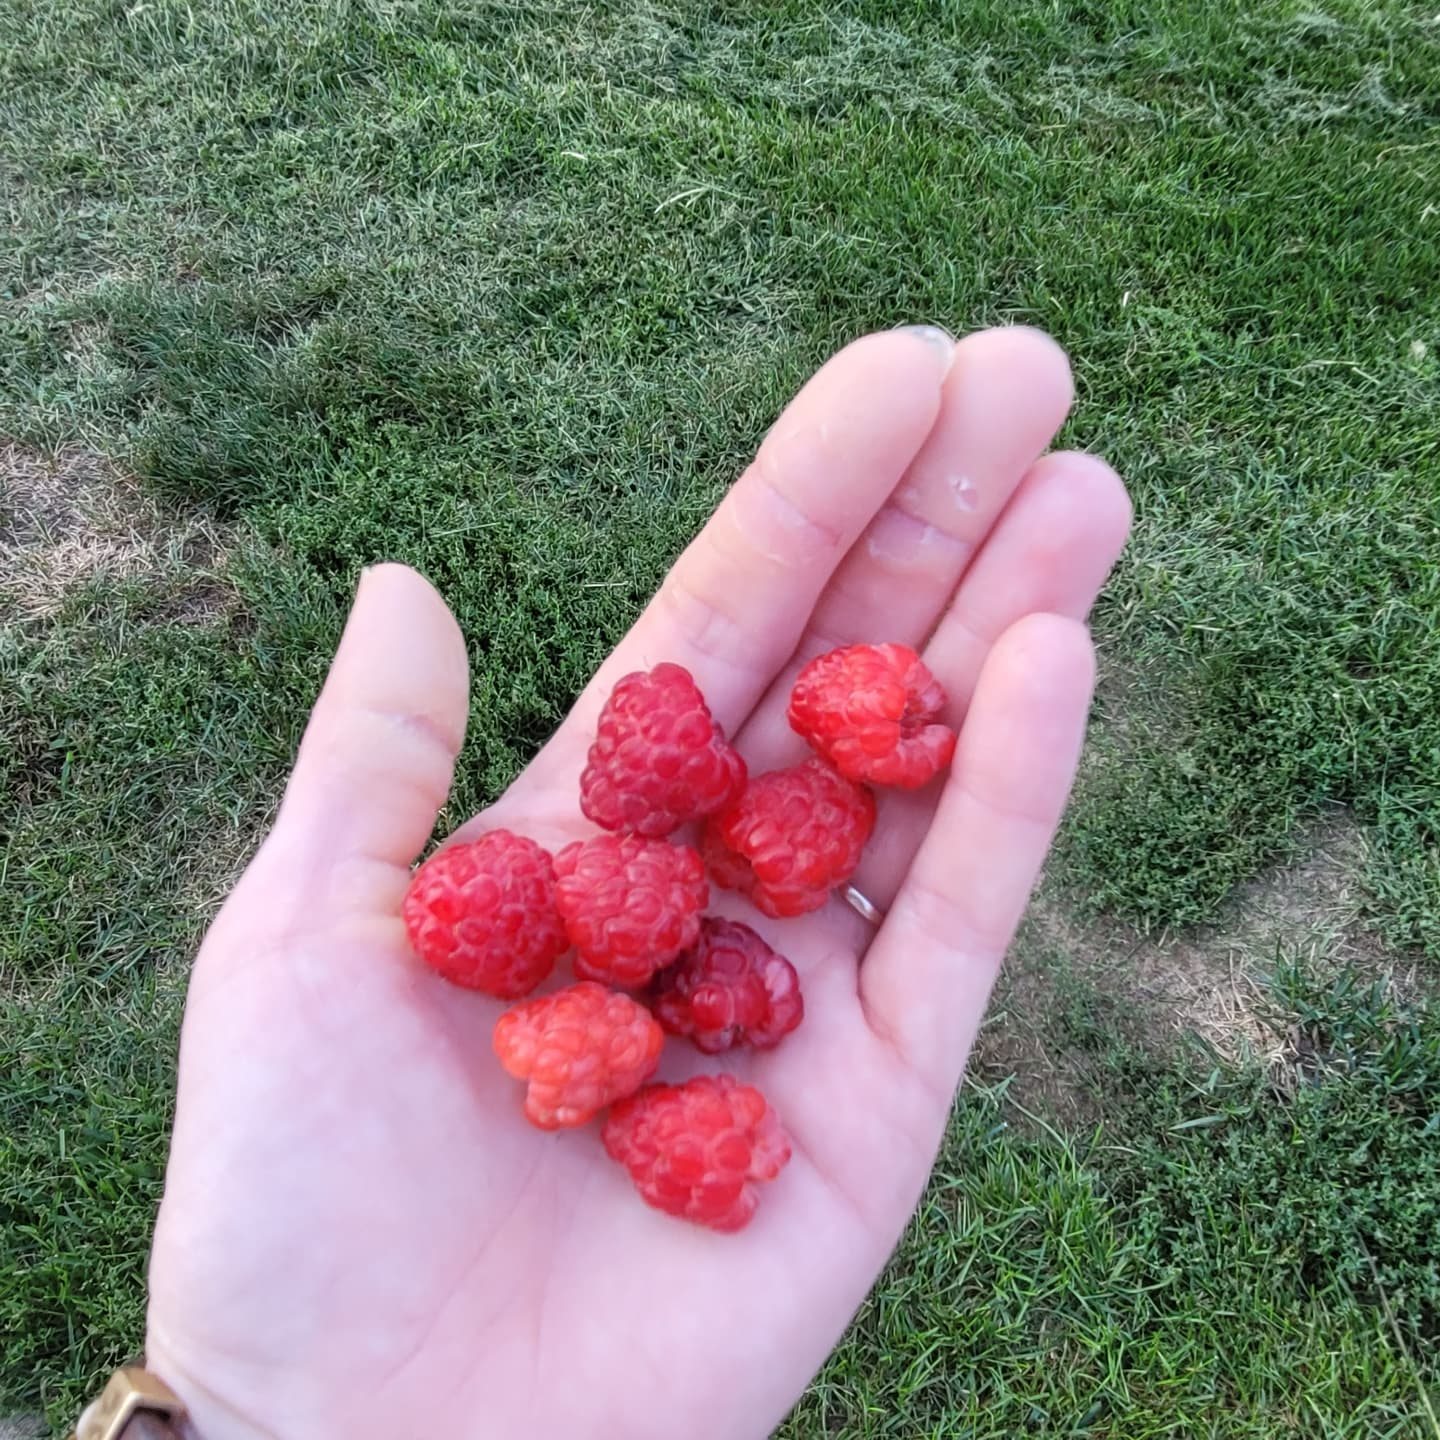 Fresh raspberries from the garden? Yes please. 

#nofilter #summer #foodie #raspberries